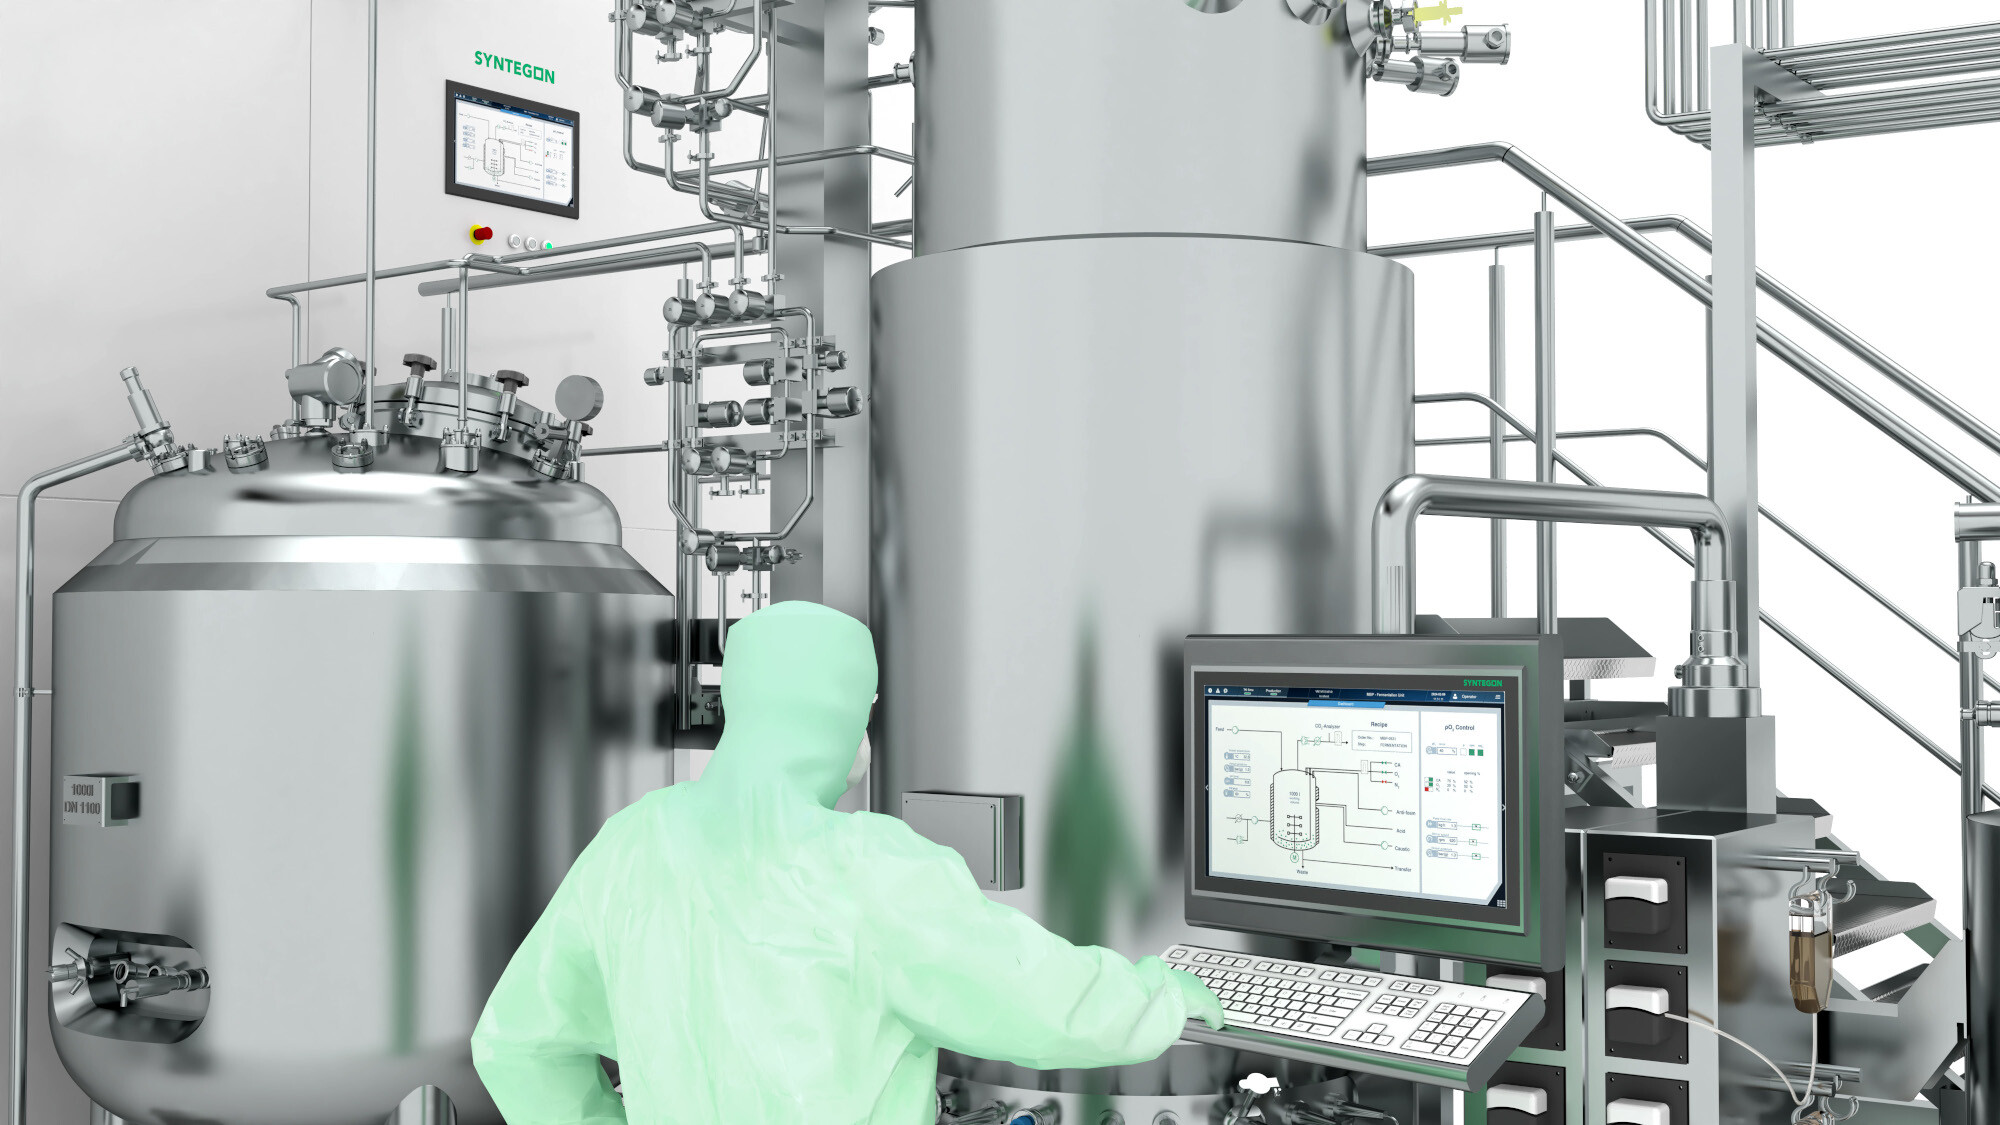 Die voll integrierte und automatisierte Plattform hilft biopharmazeutischen Herstellern, schnell anspruchsvolle Produktionskapazitäten in höchster Qualität aufzubauen.